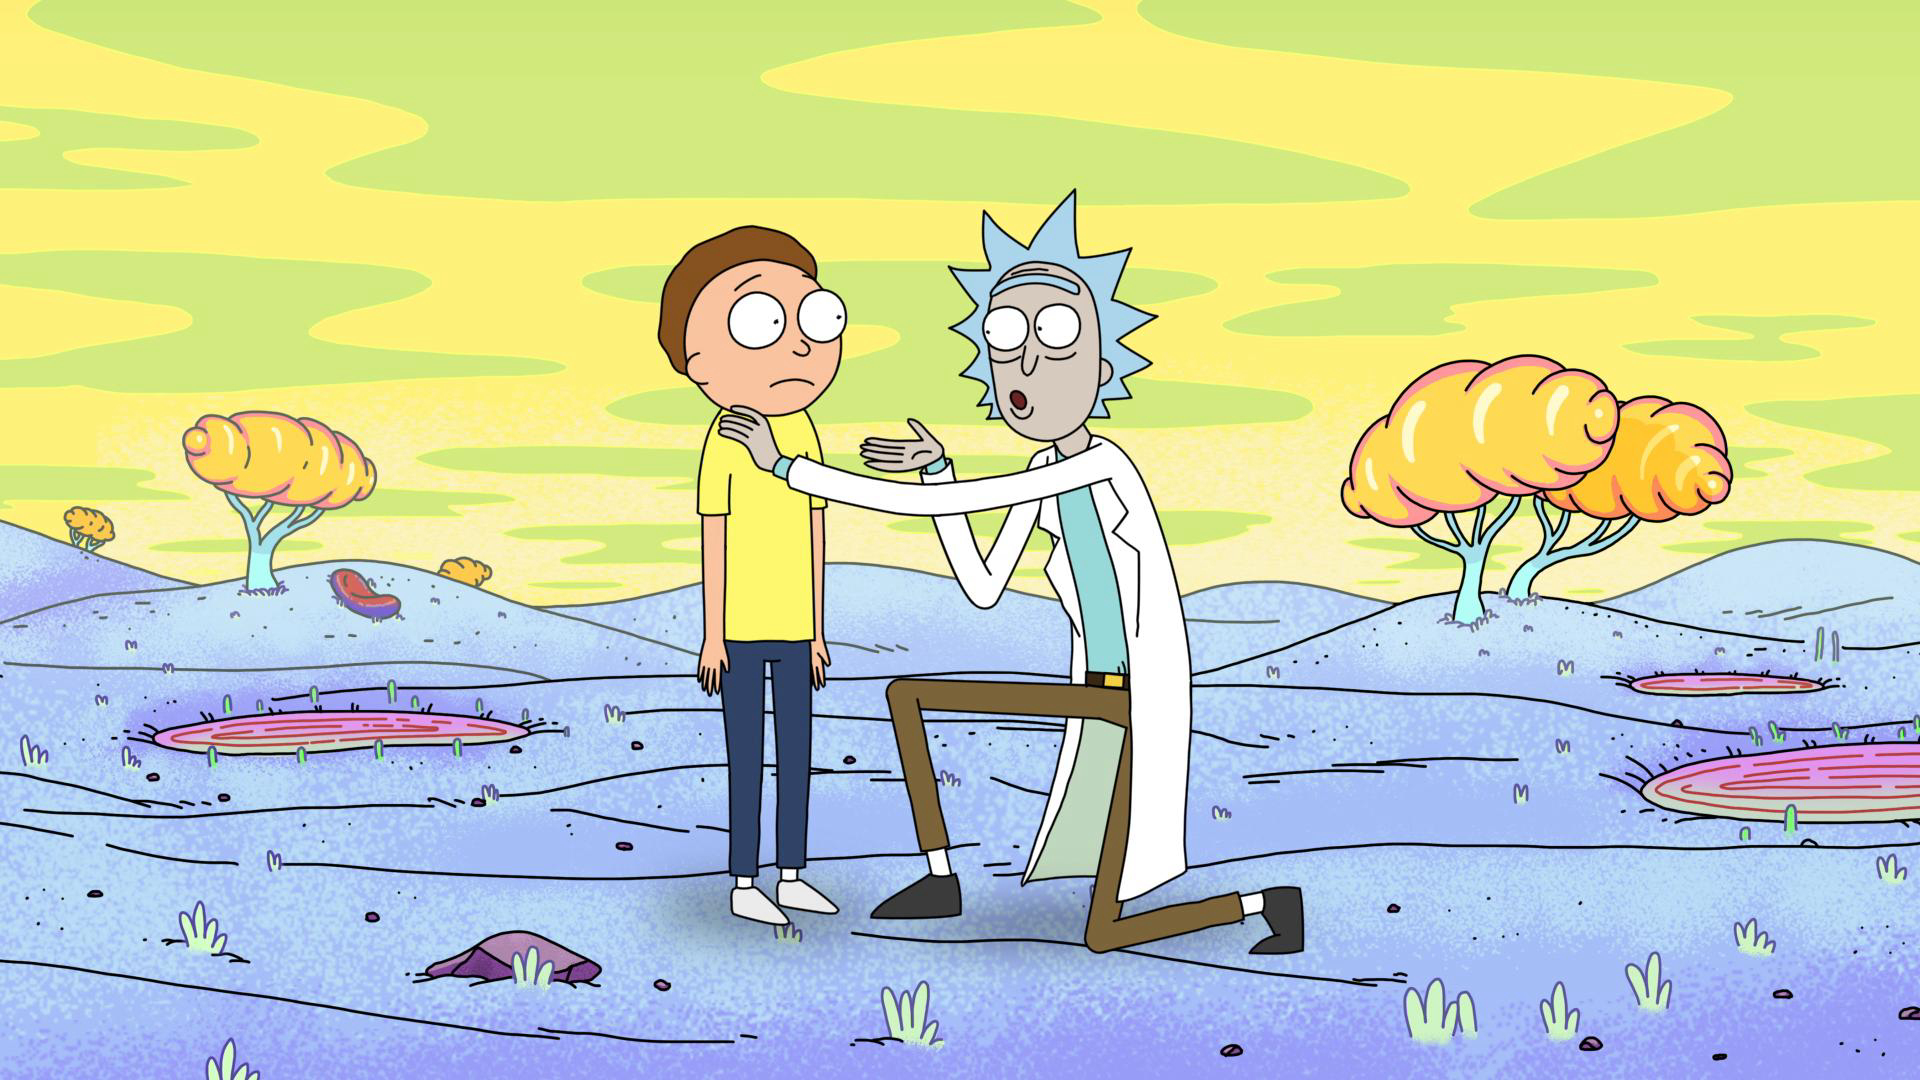 Rick and Morty (Season 1) / Rick and Morty (Season 1) (2013)